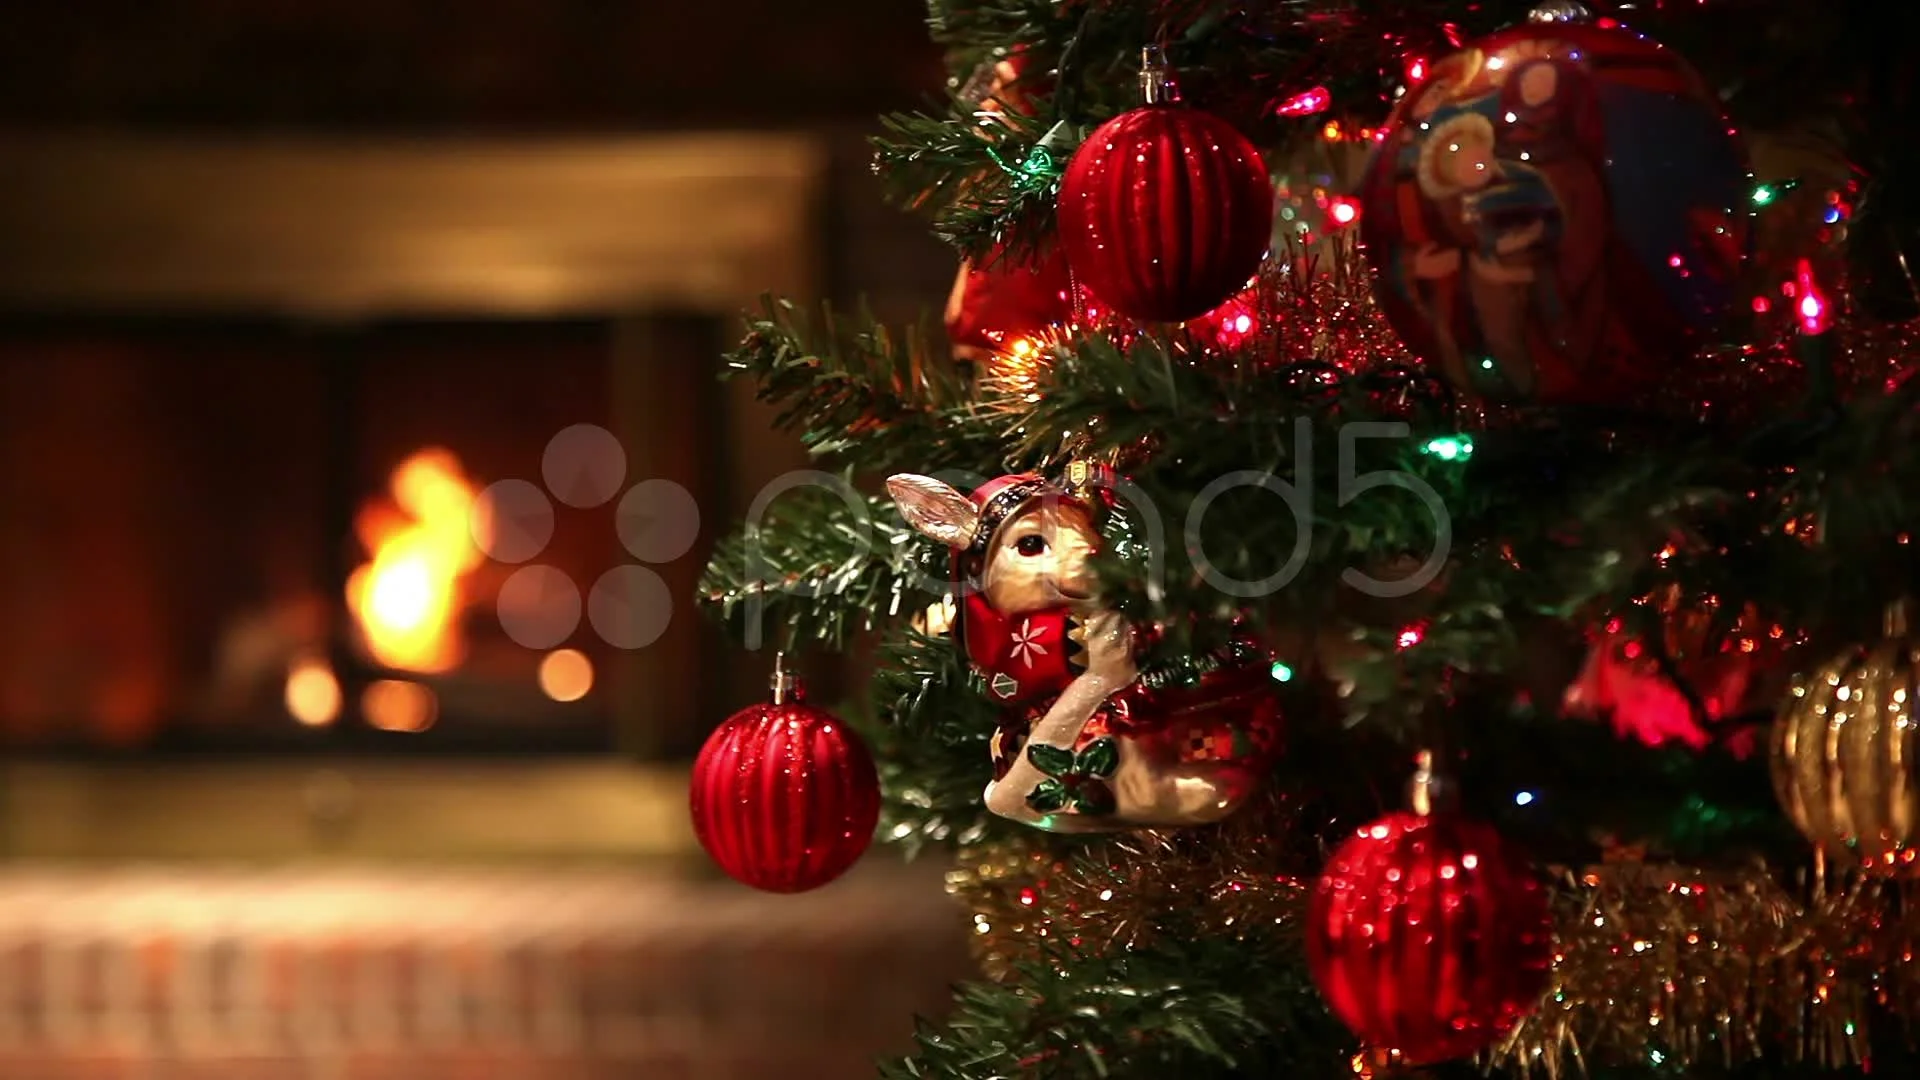 Cây thông Noel - mang đến không khí lễ hội ấm áp và những bất ngờ thú vị cho bất cứ ai khi nhìn thấy. Hãy thưởng thức hình ảnh của một cây thông Noel đầy màu sắc và trang trí tỉ mỉ.